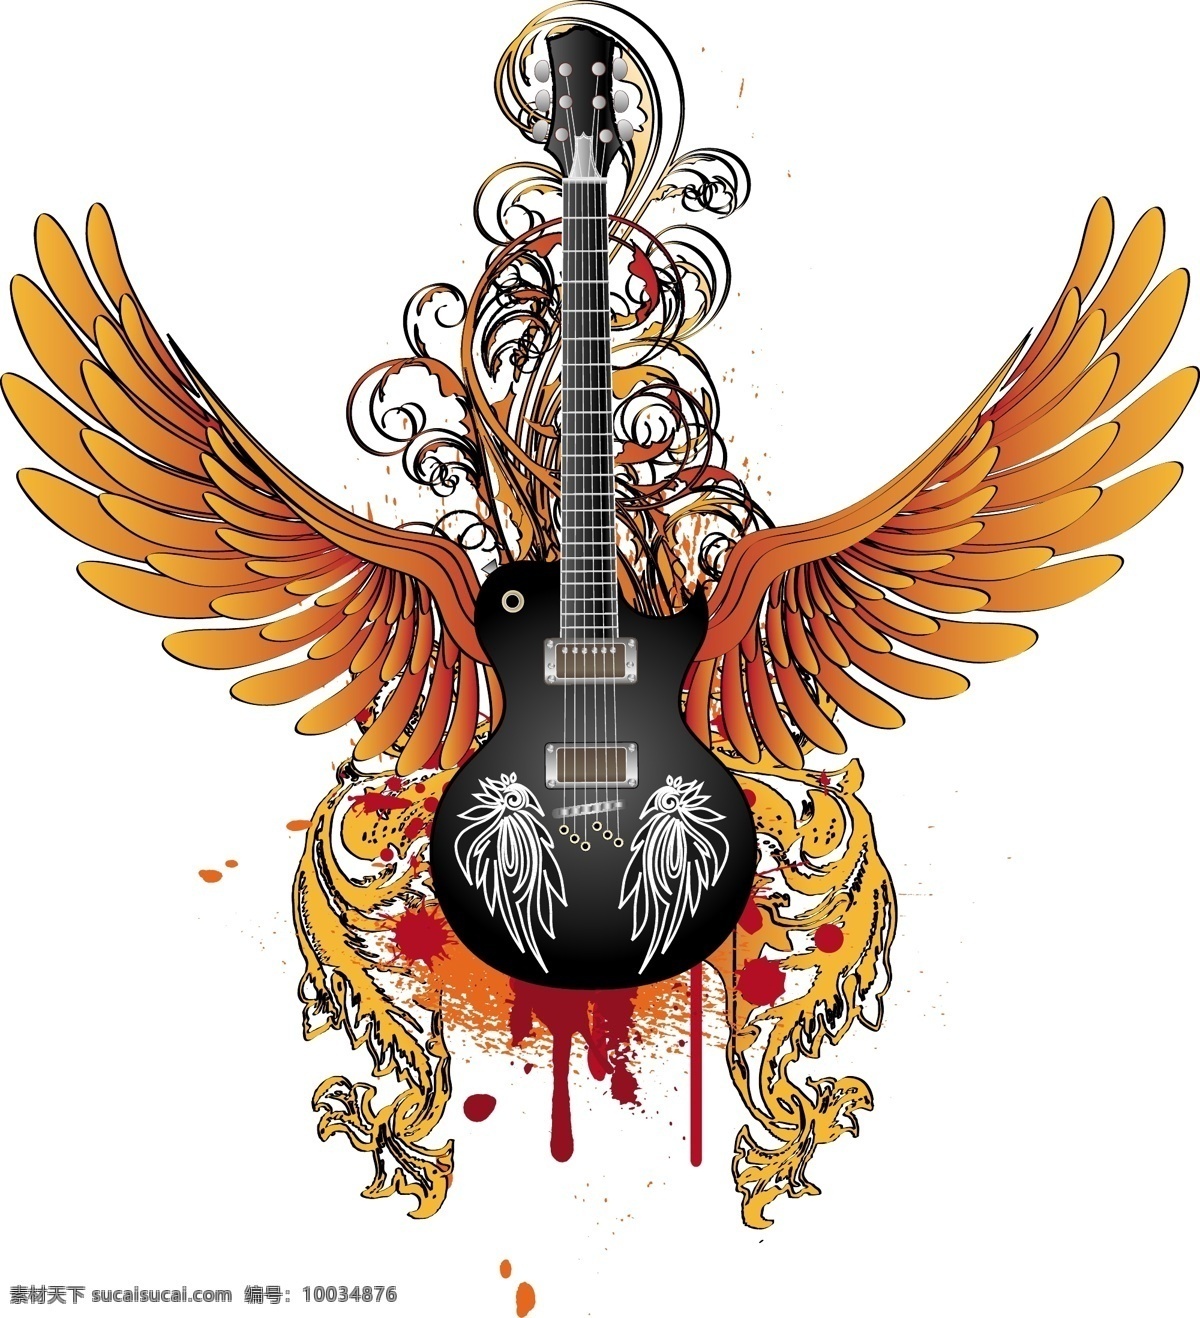 吉他 翅膀 矢量图 麦克风 双翼 吉他乐器 摇滚音乐 音乐海报 影音娱乐 生活百科 矢量素材 白色